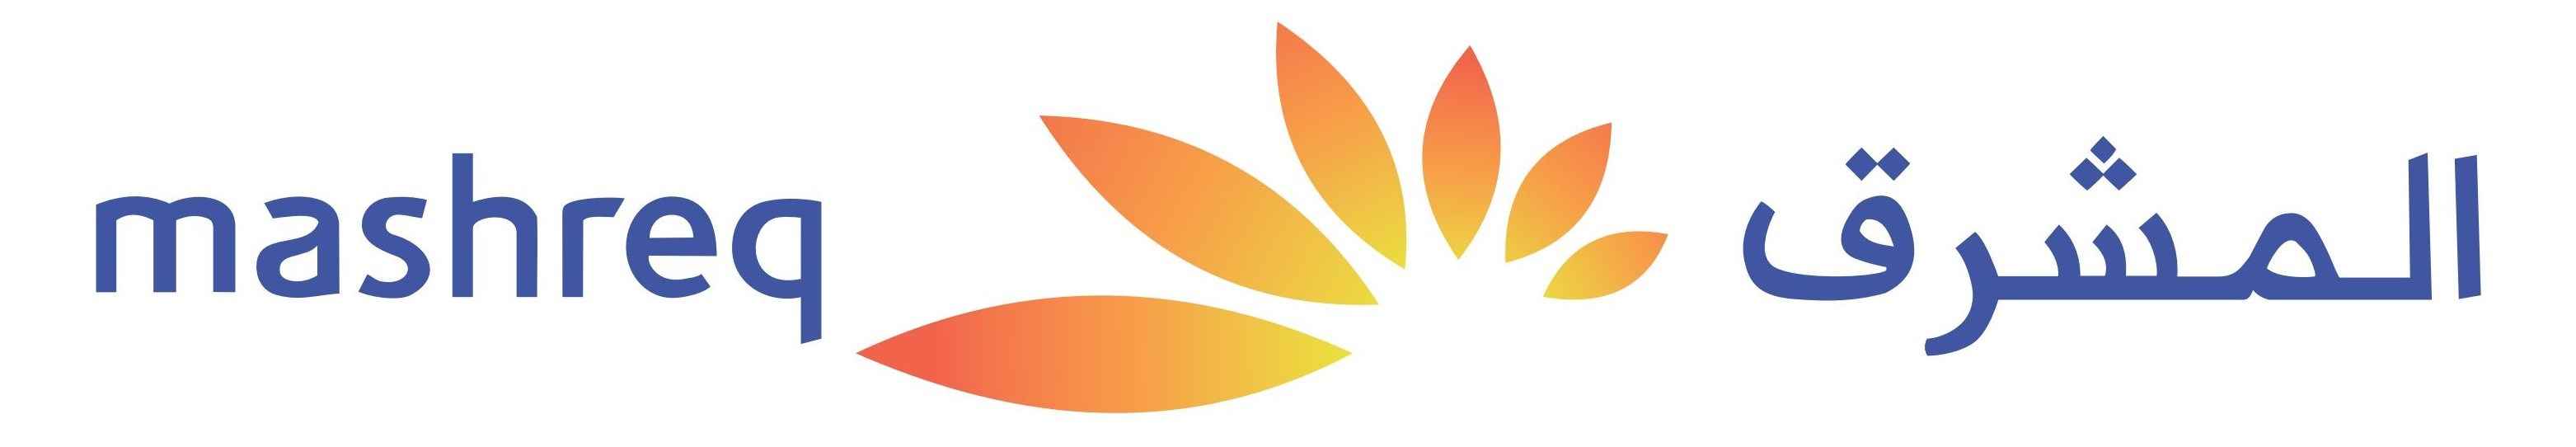 Mashreq bank Logo png